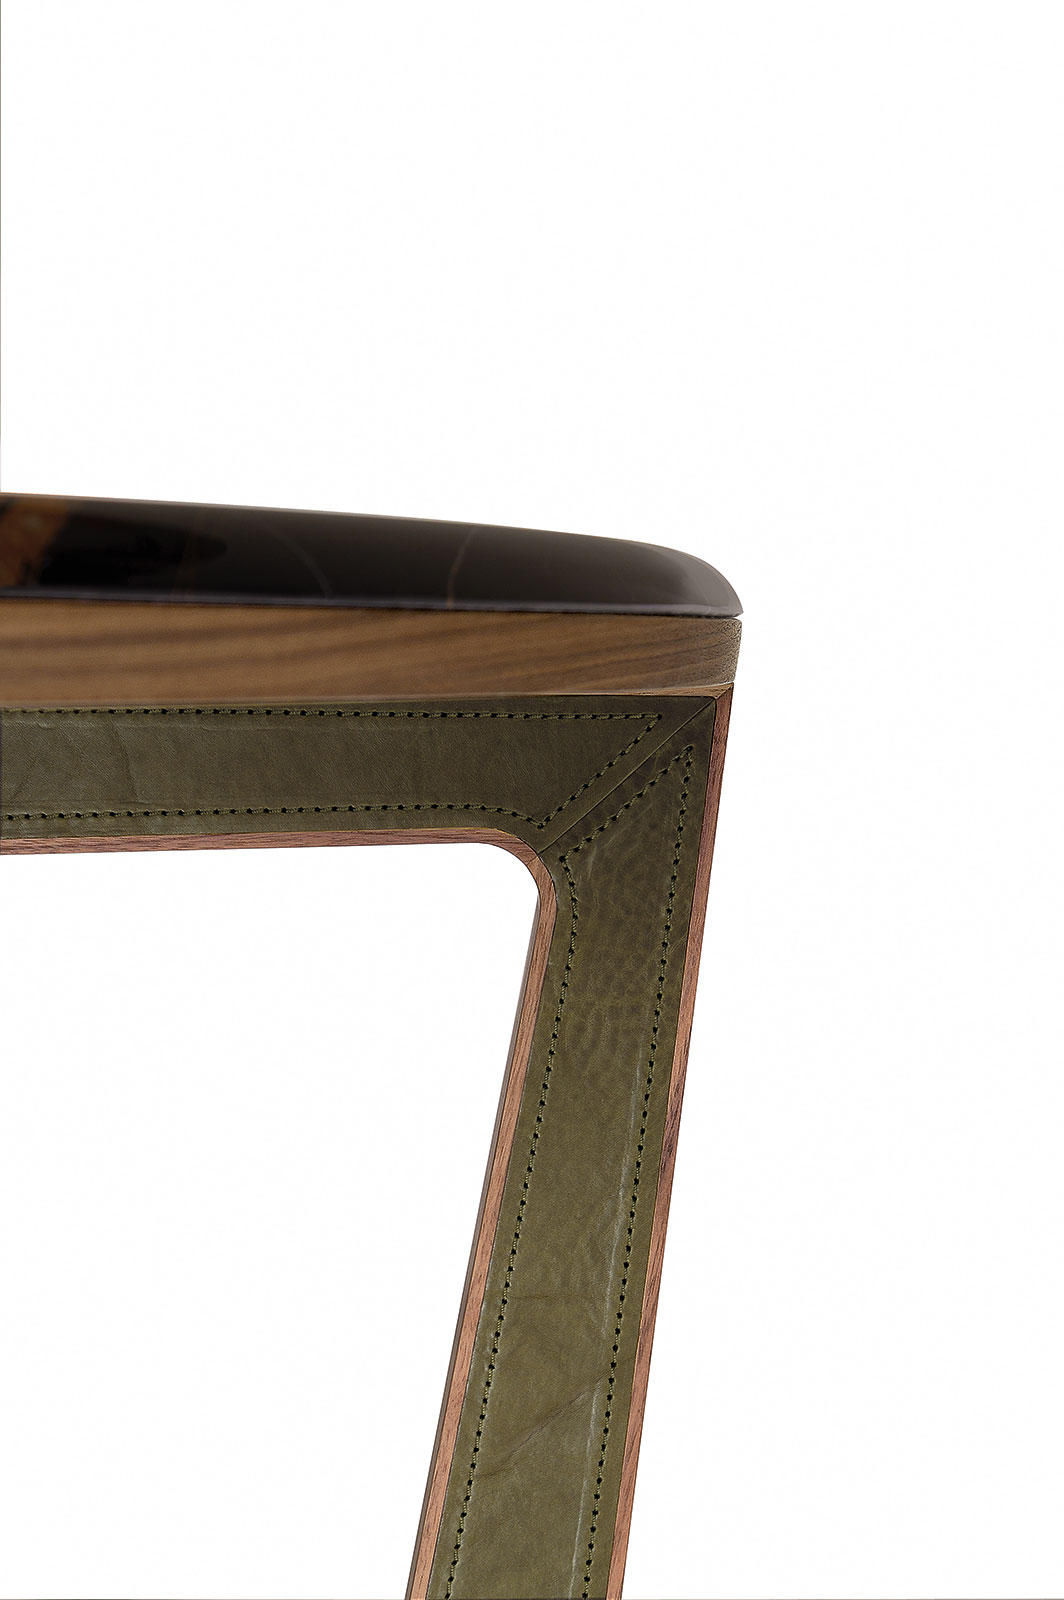 Table ronde de repas made in italy. Plan en marbre et pied en bois et cuir. Vente en ligne de meubles design haut de gamme avec livraison gratuite.